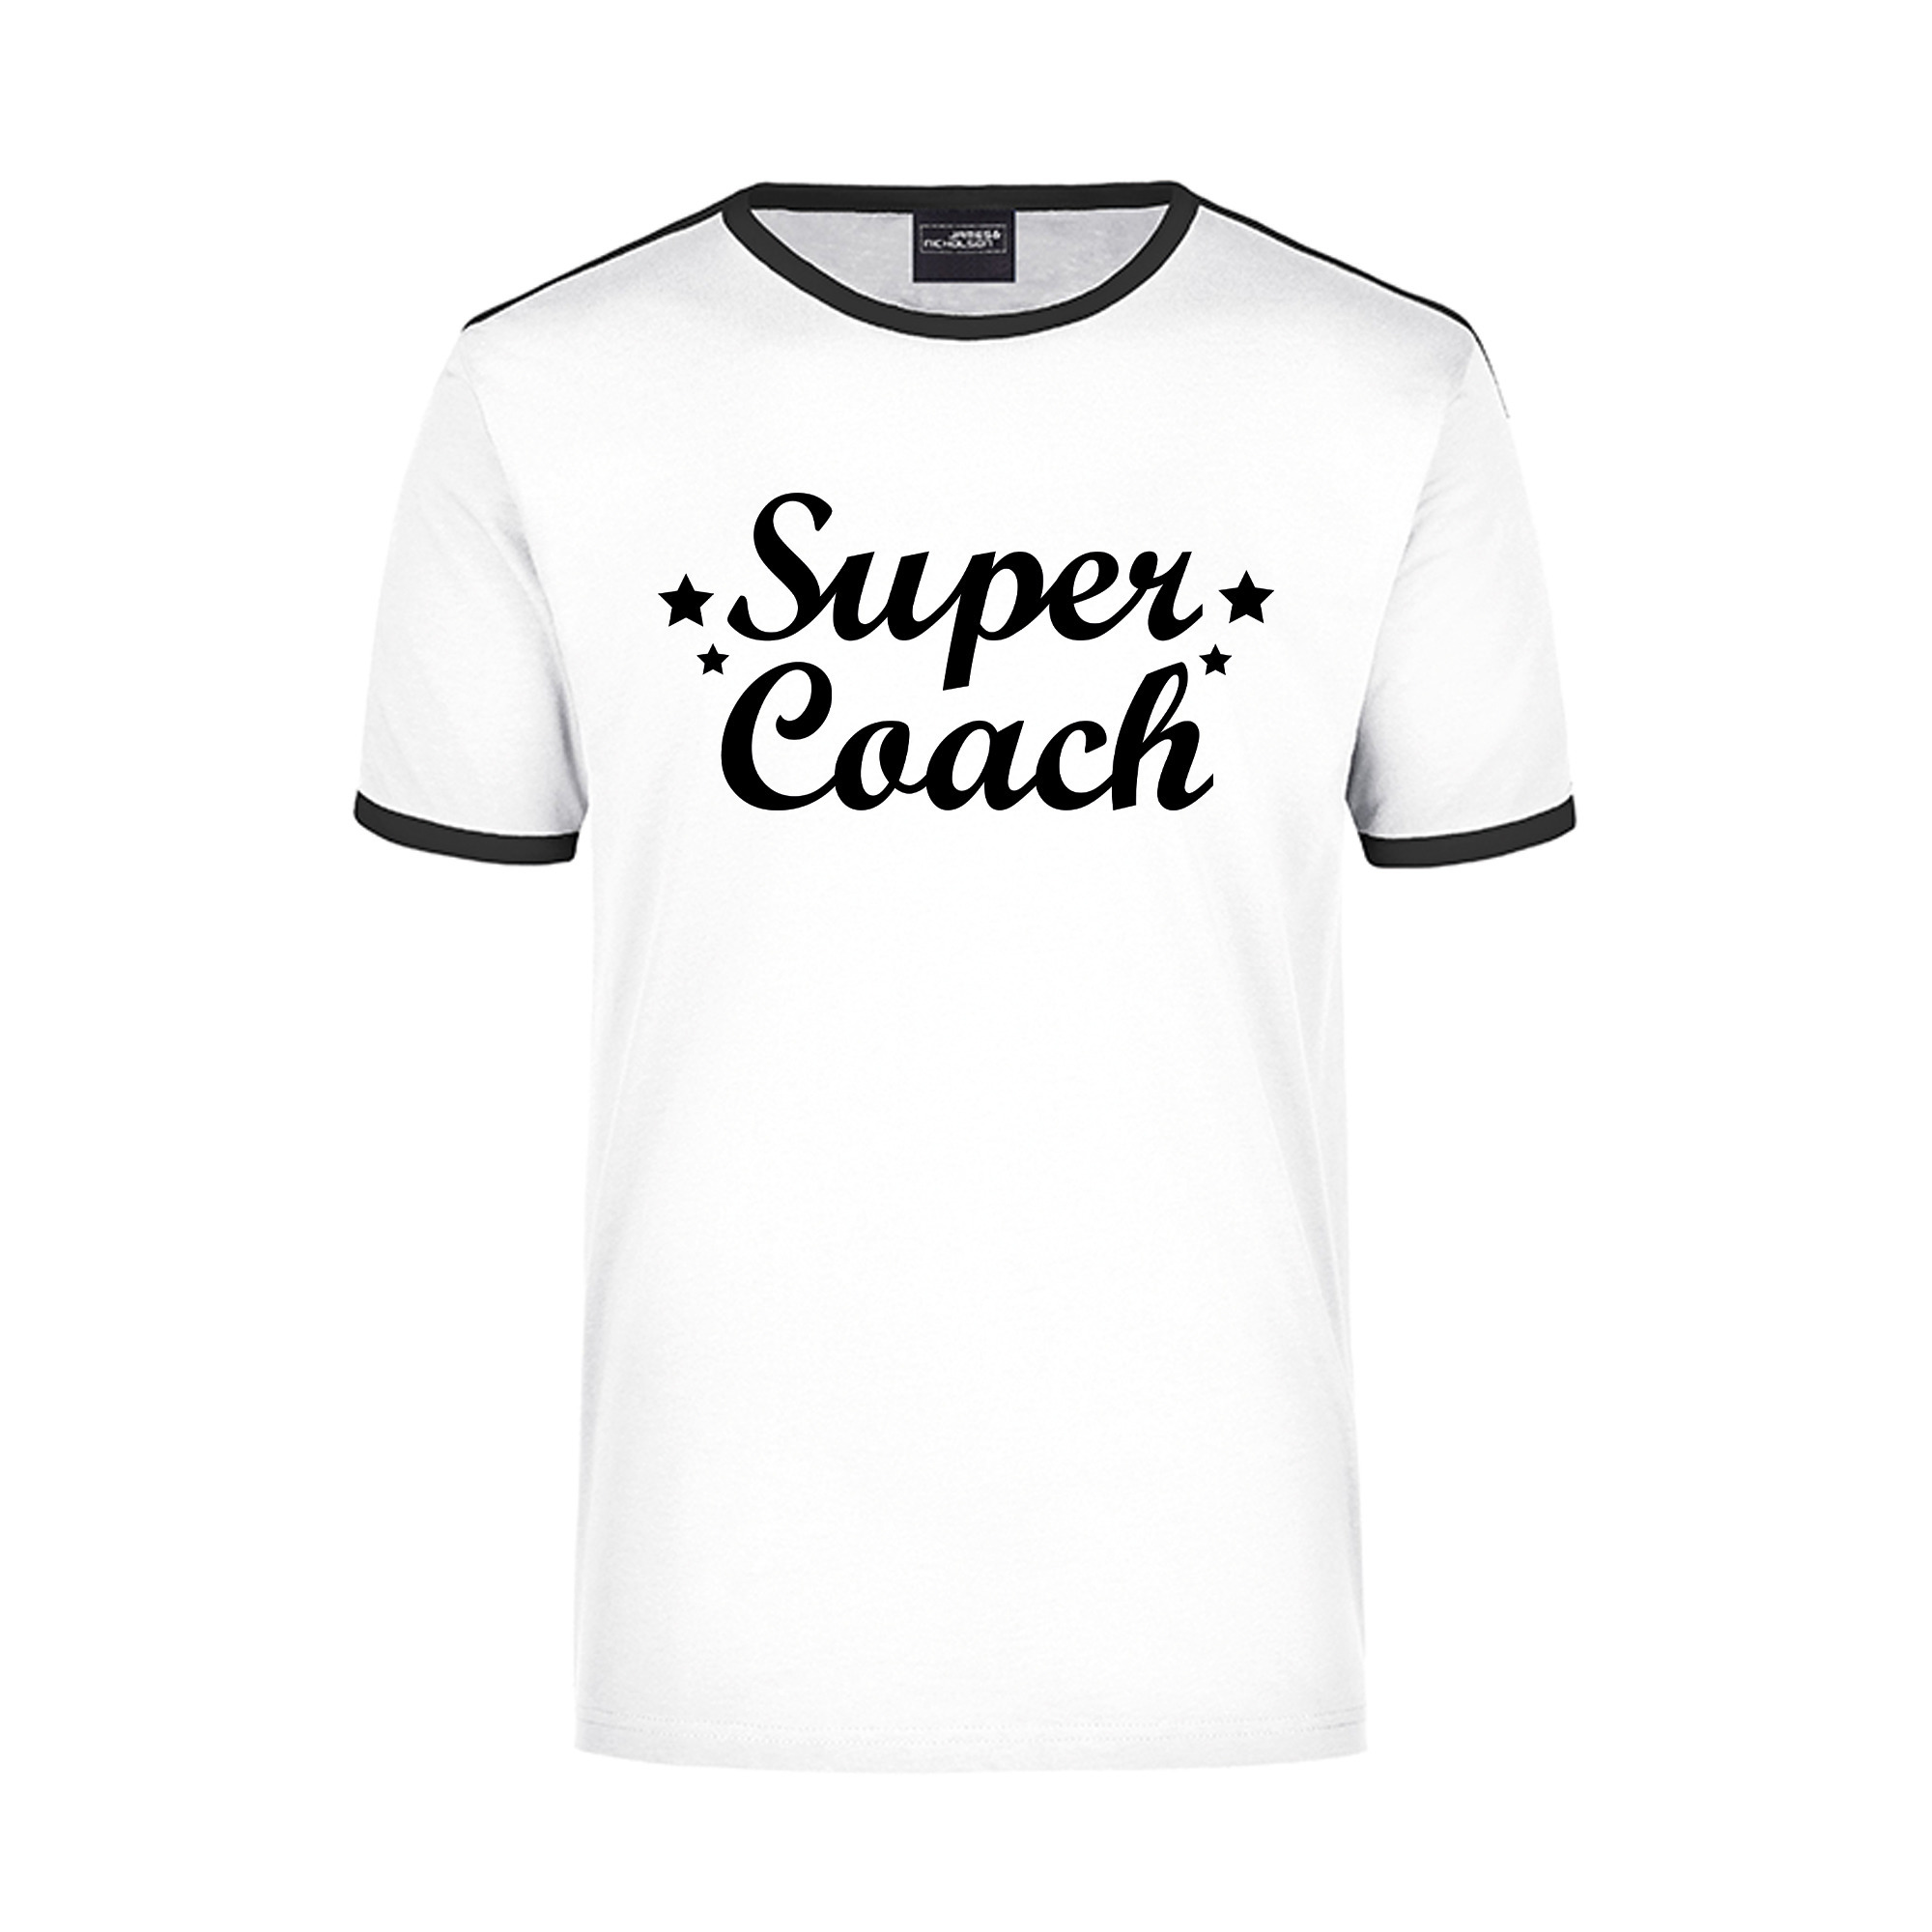 Super coach wit/zwart ringer t-shirt voor heren